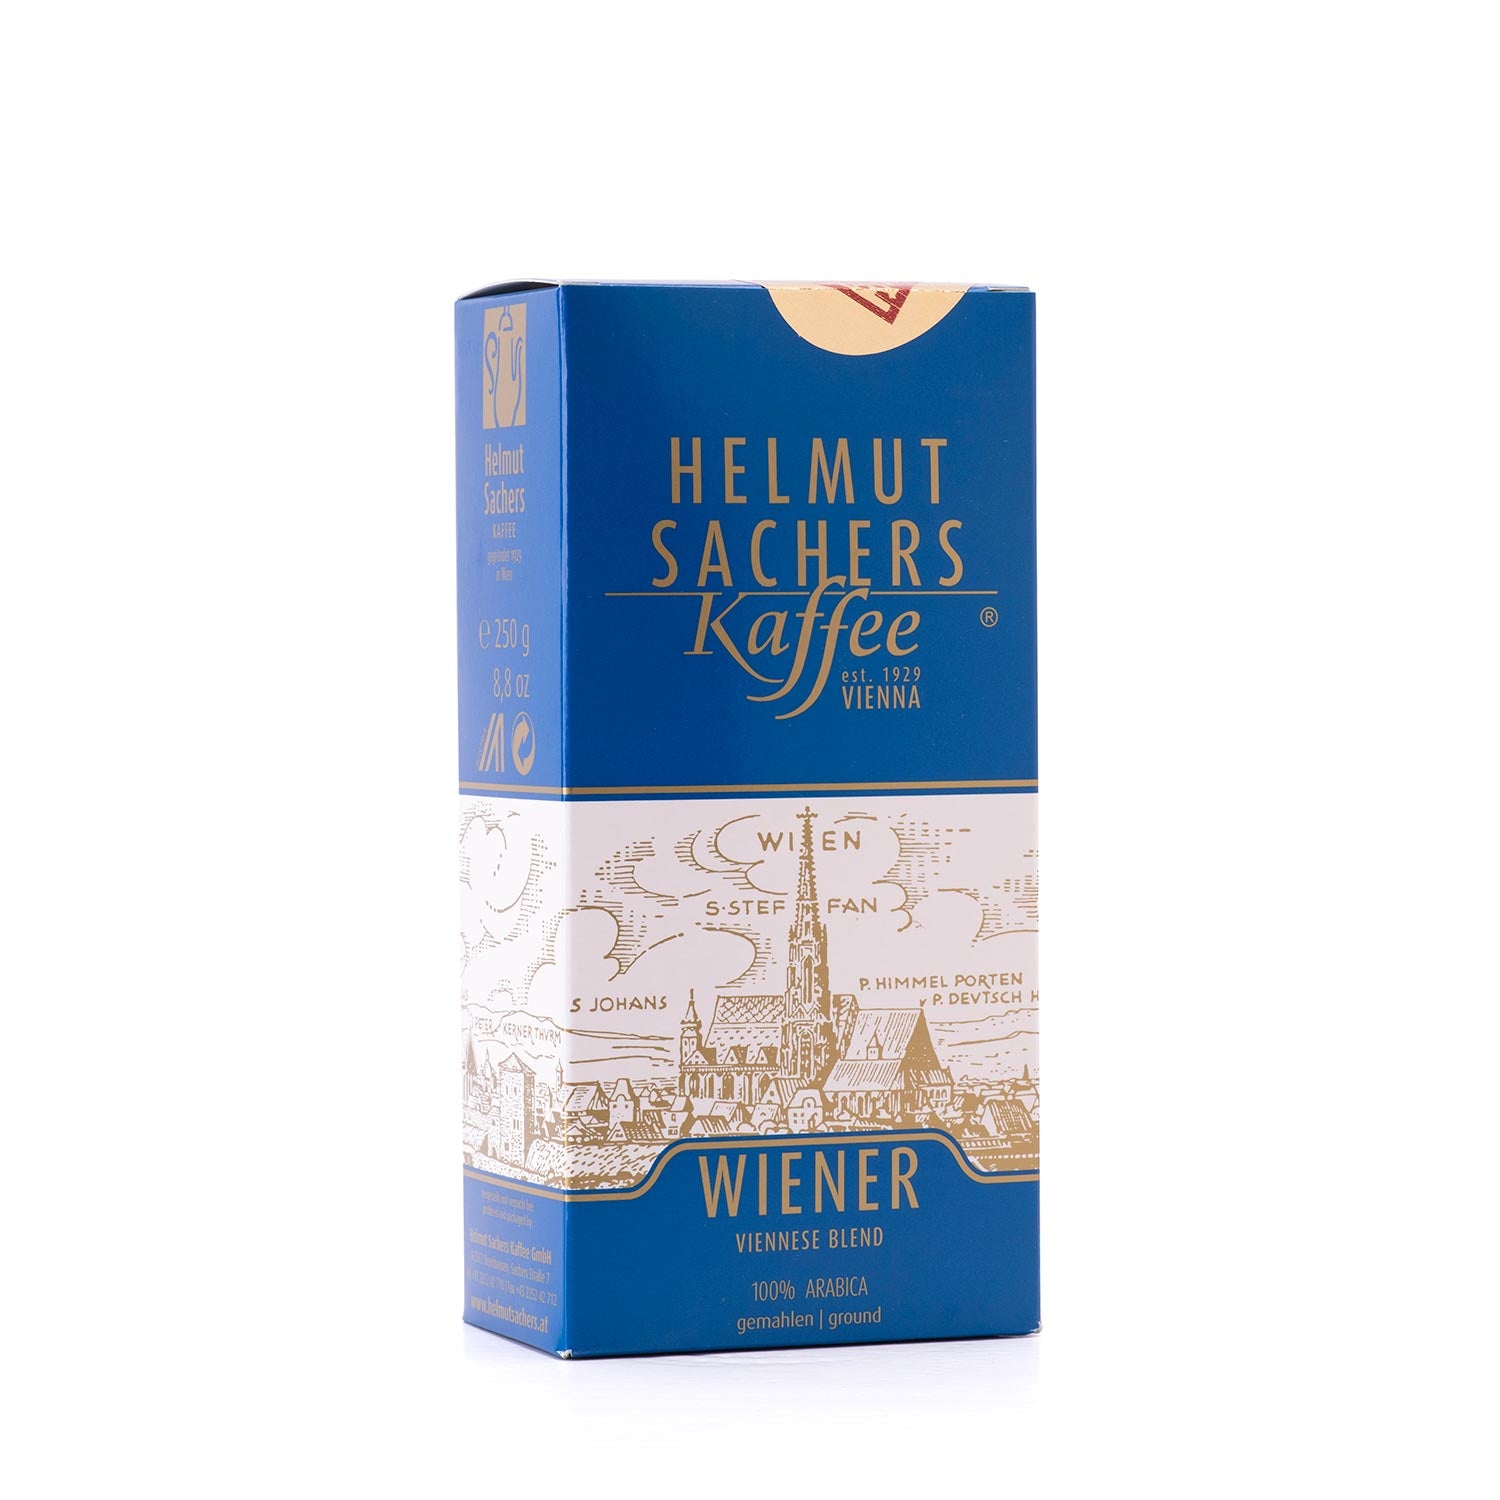 Coffee-Sacher-Wiener-Blend-250g-web_0e15ee97-d024-45ed-8053-a2f8f04a0374.jpg